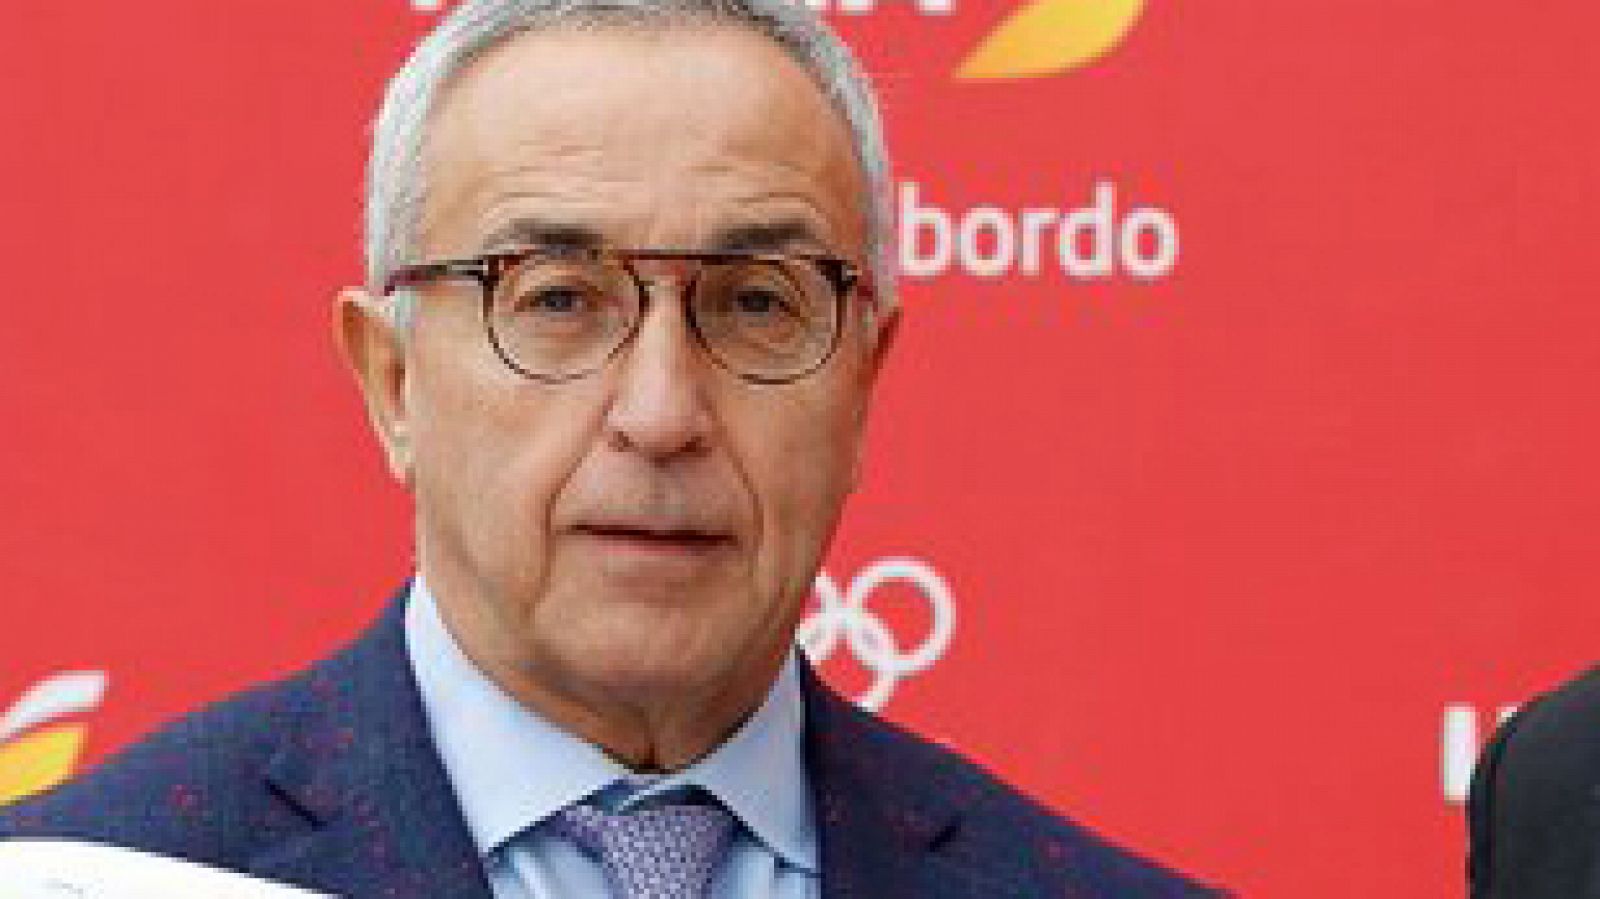 El presidente del Comité Olímpico Español, Alejandro Blanco durante un acto público.